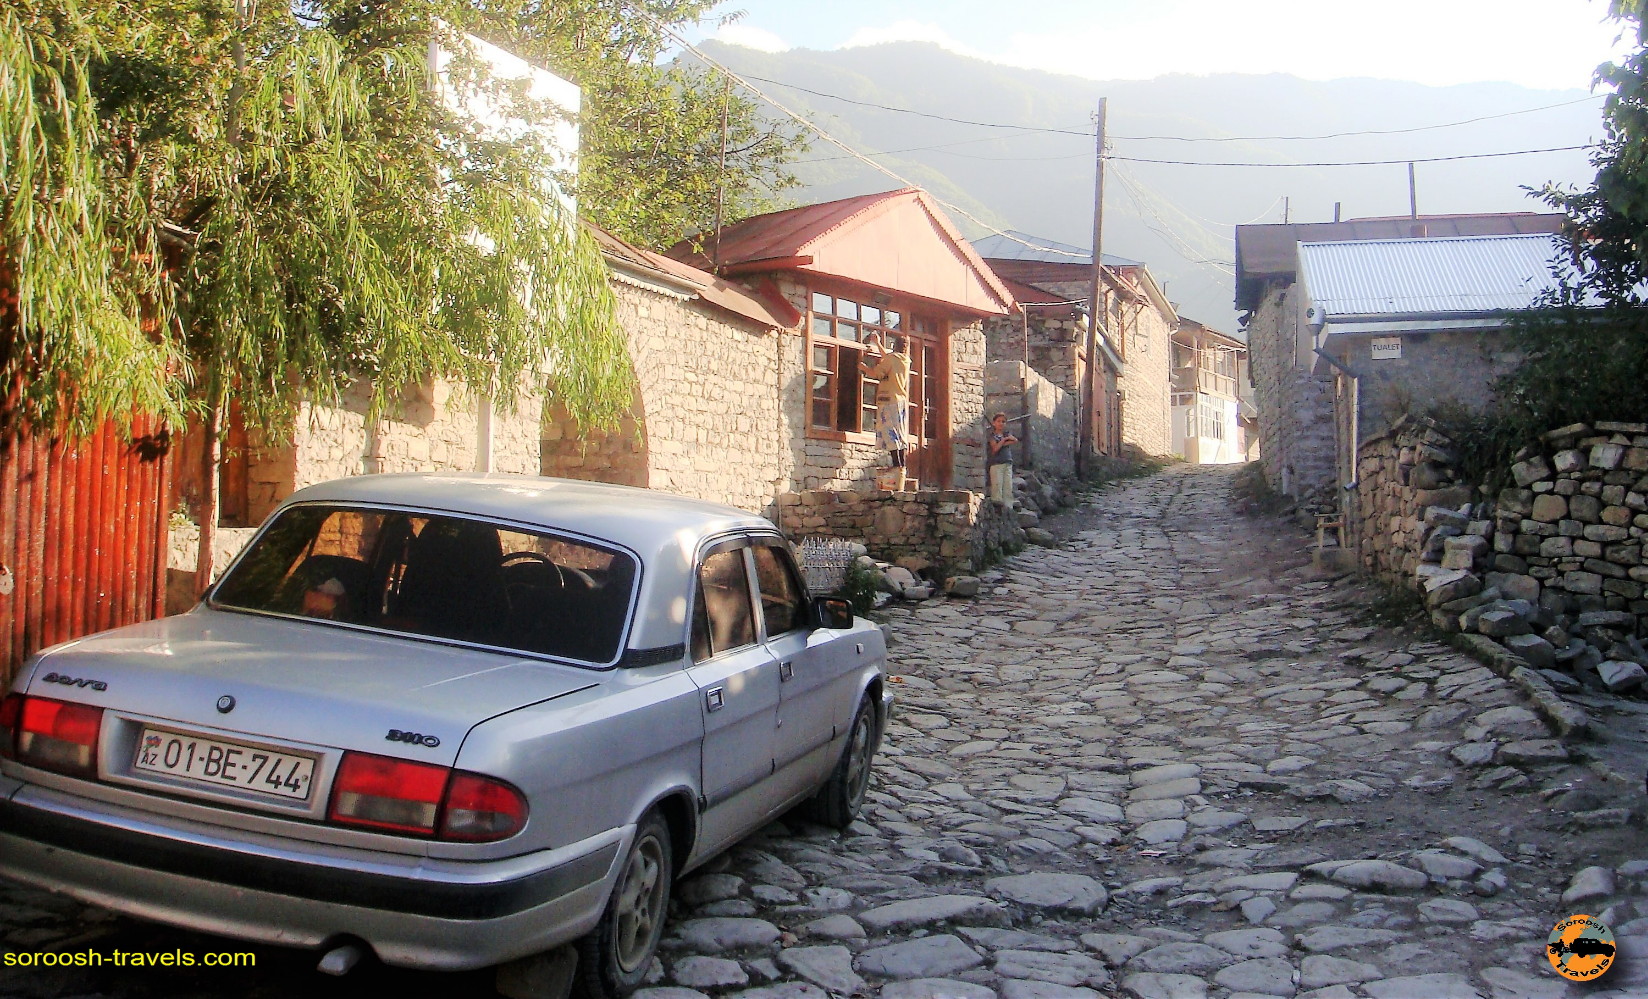 روستای تاریخی لاهیج در کشور آذربایجان - تابستان ۱۳۹۱